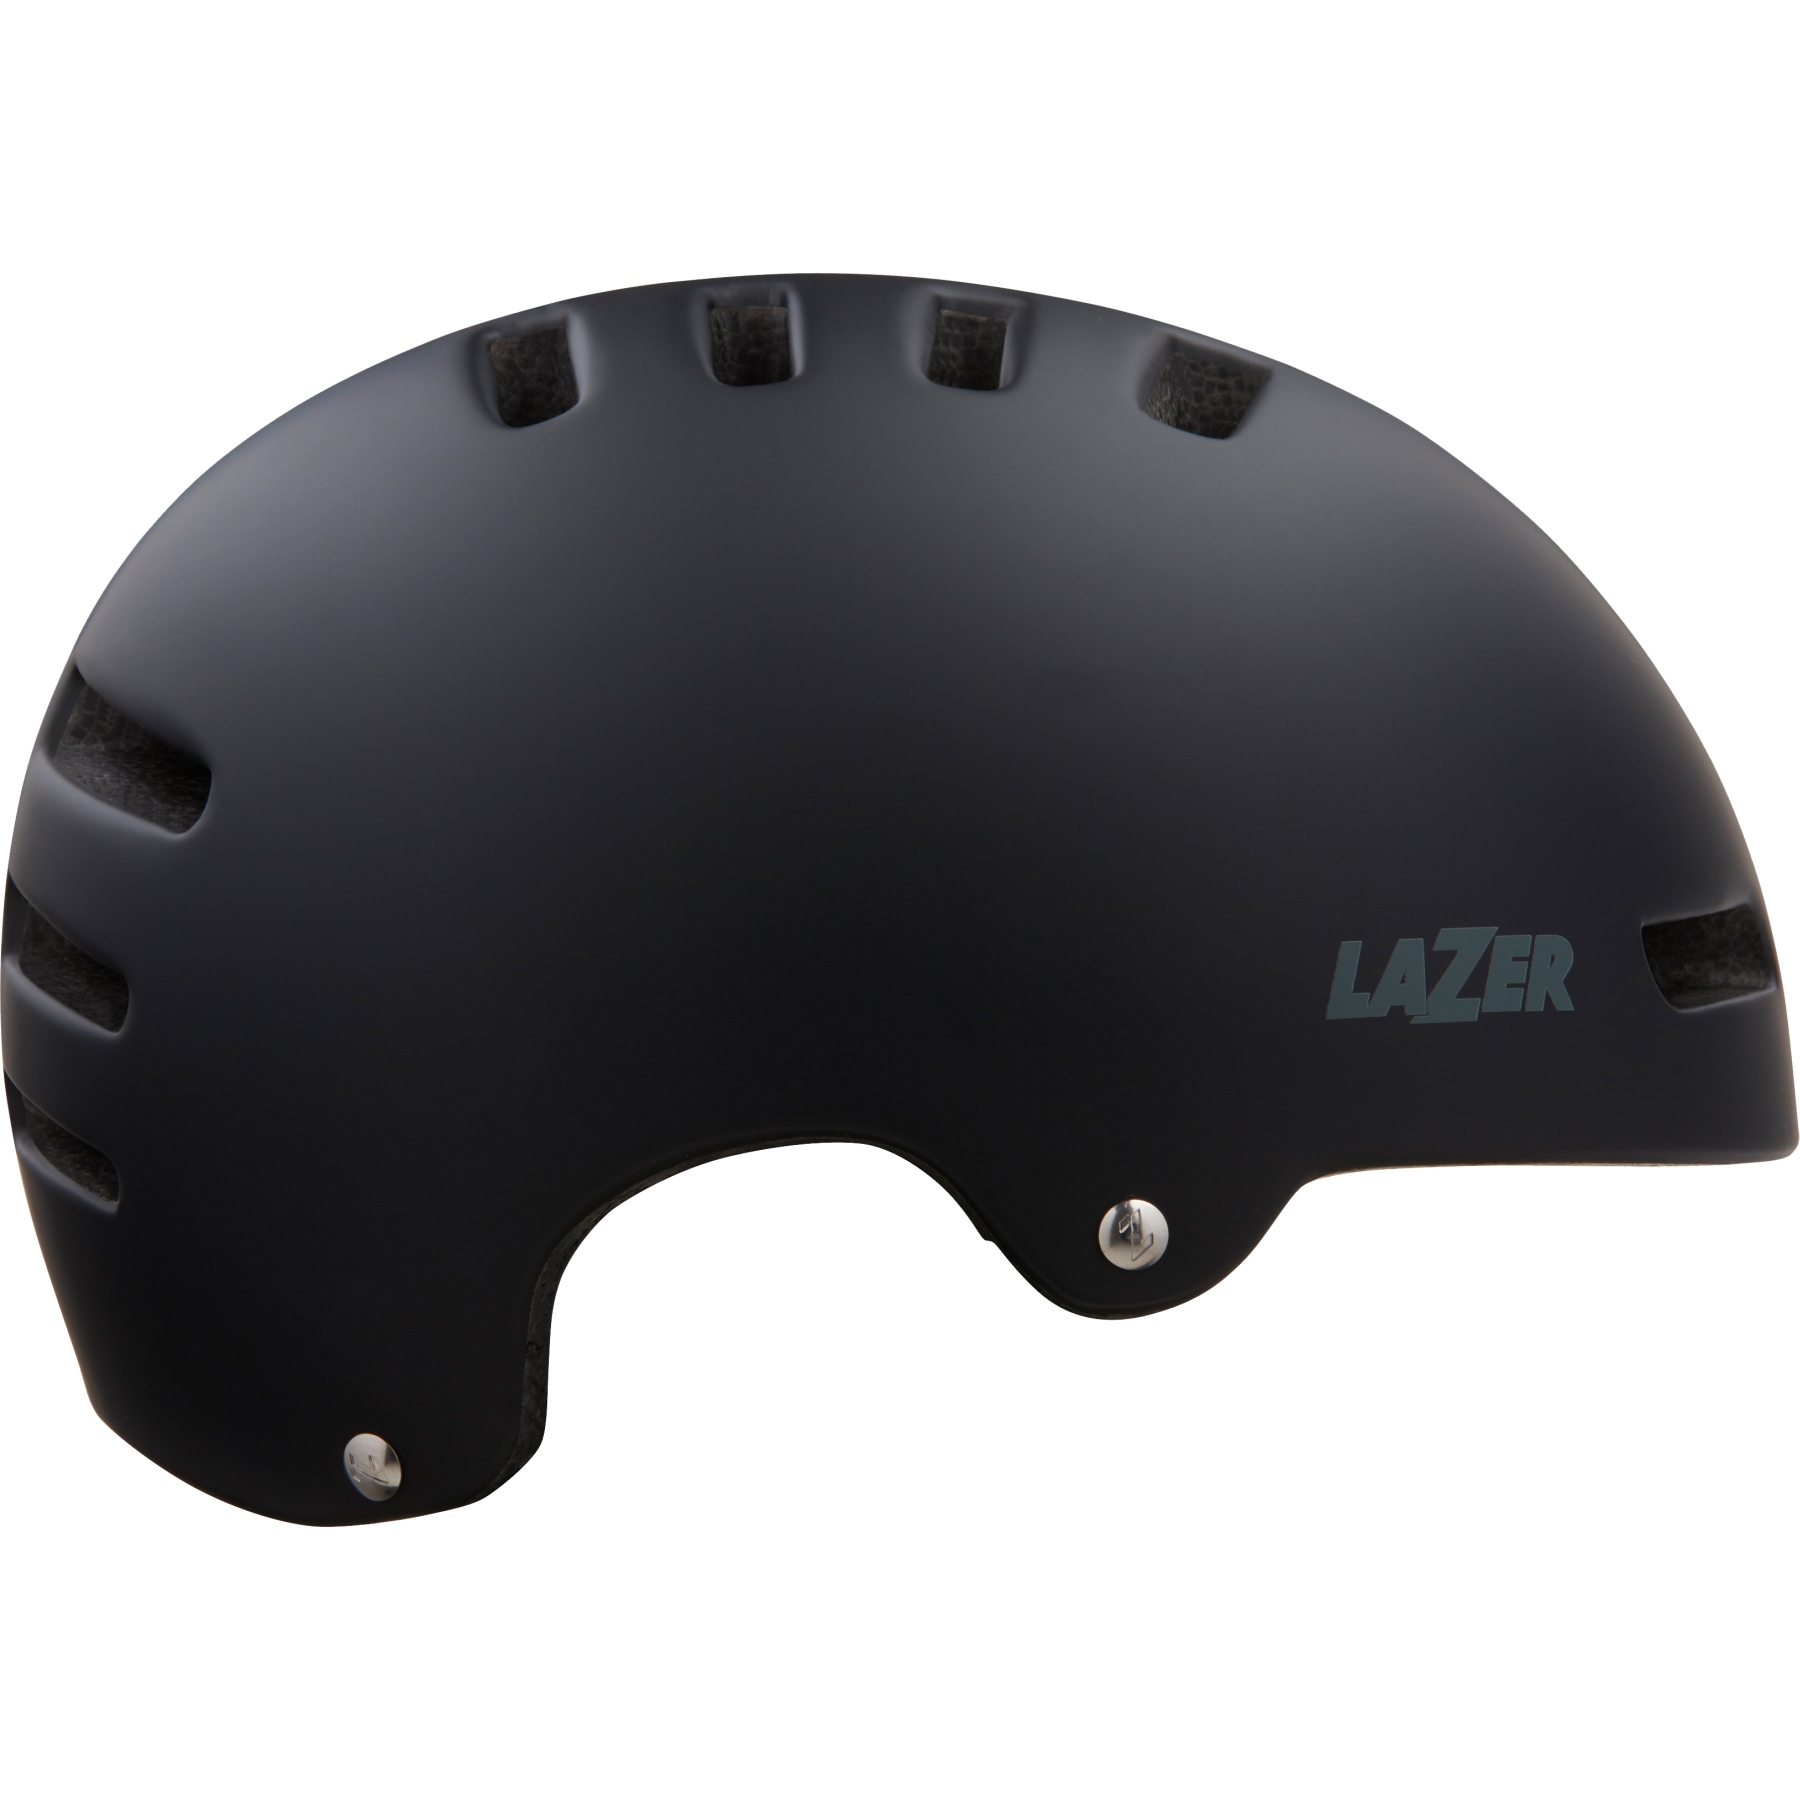 Productfoto van Lazer Armor 2.0 Helmet - matte black